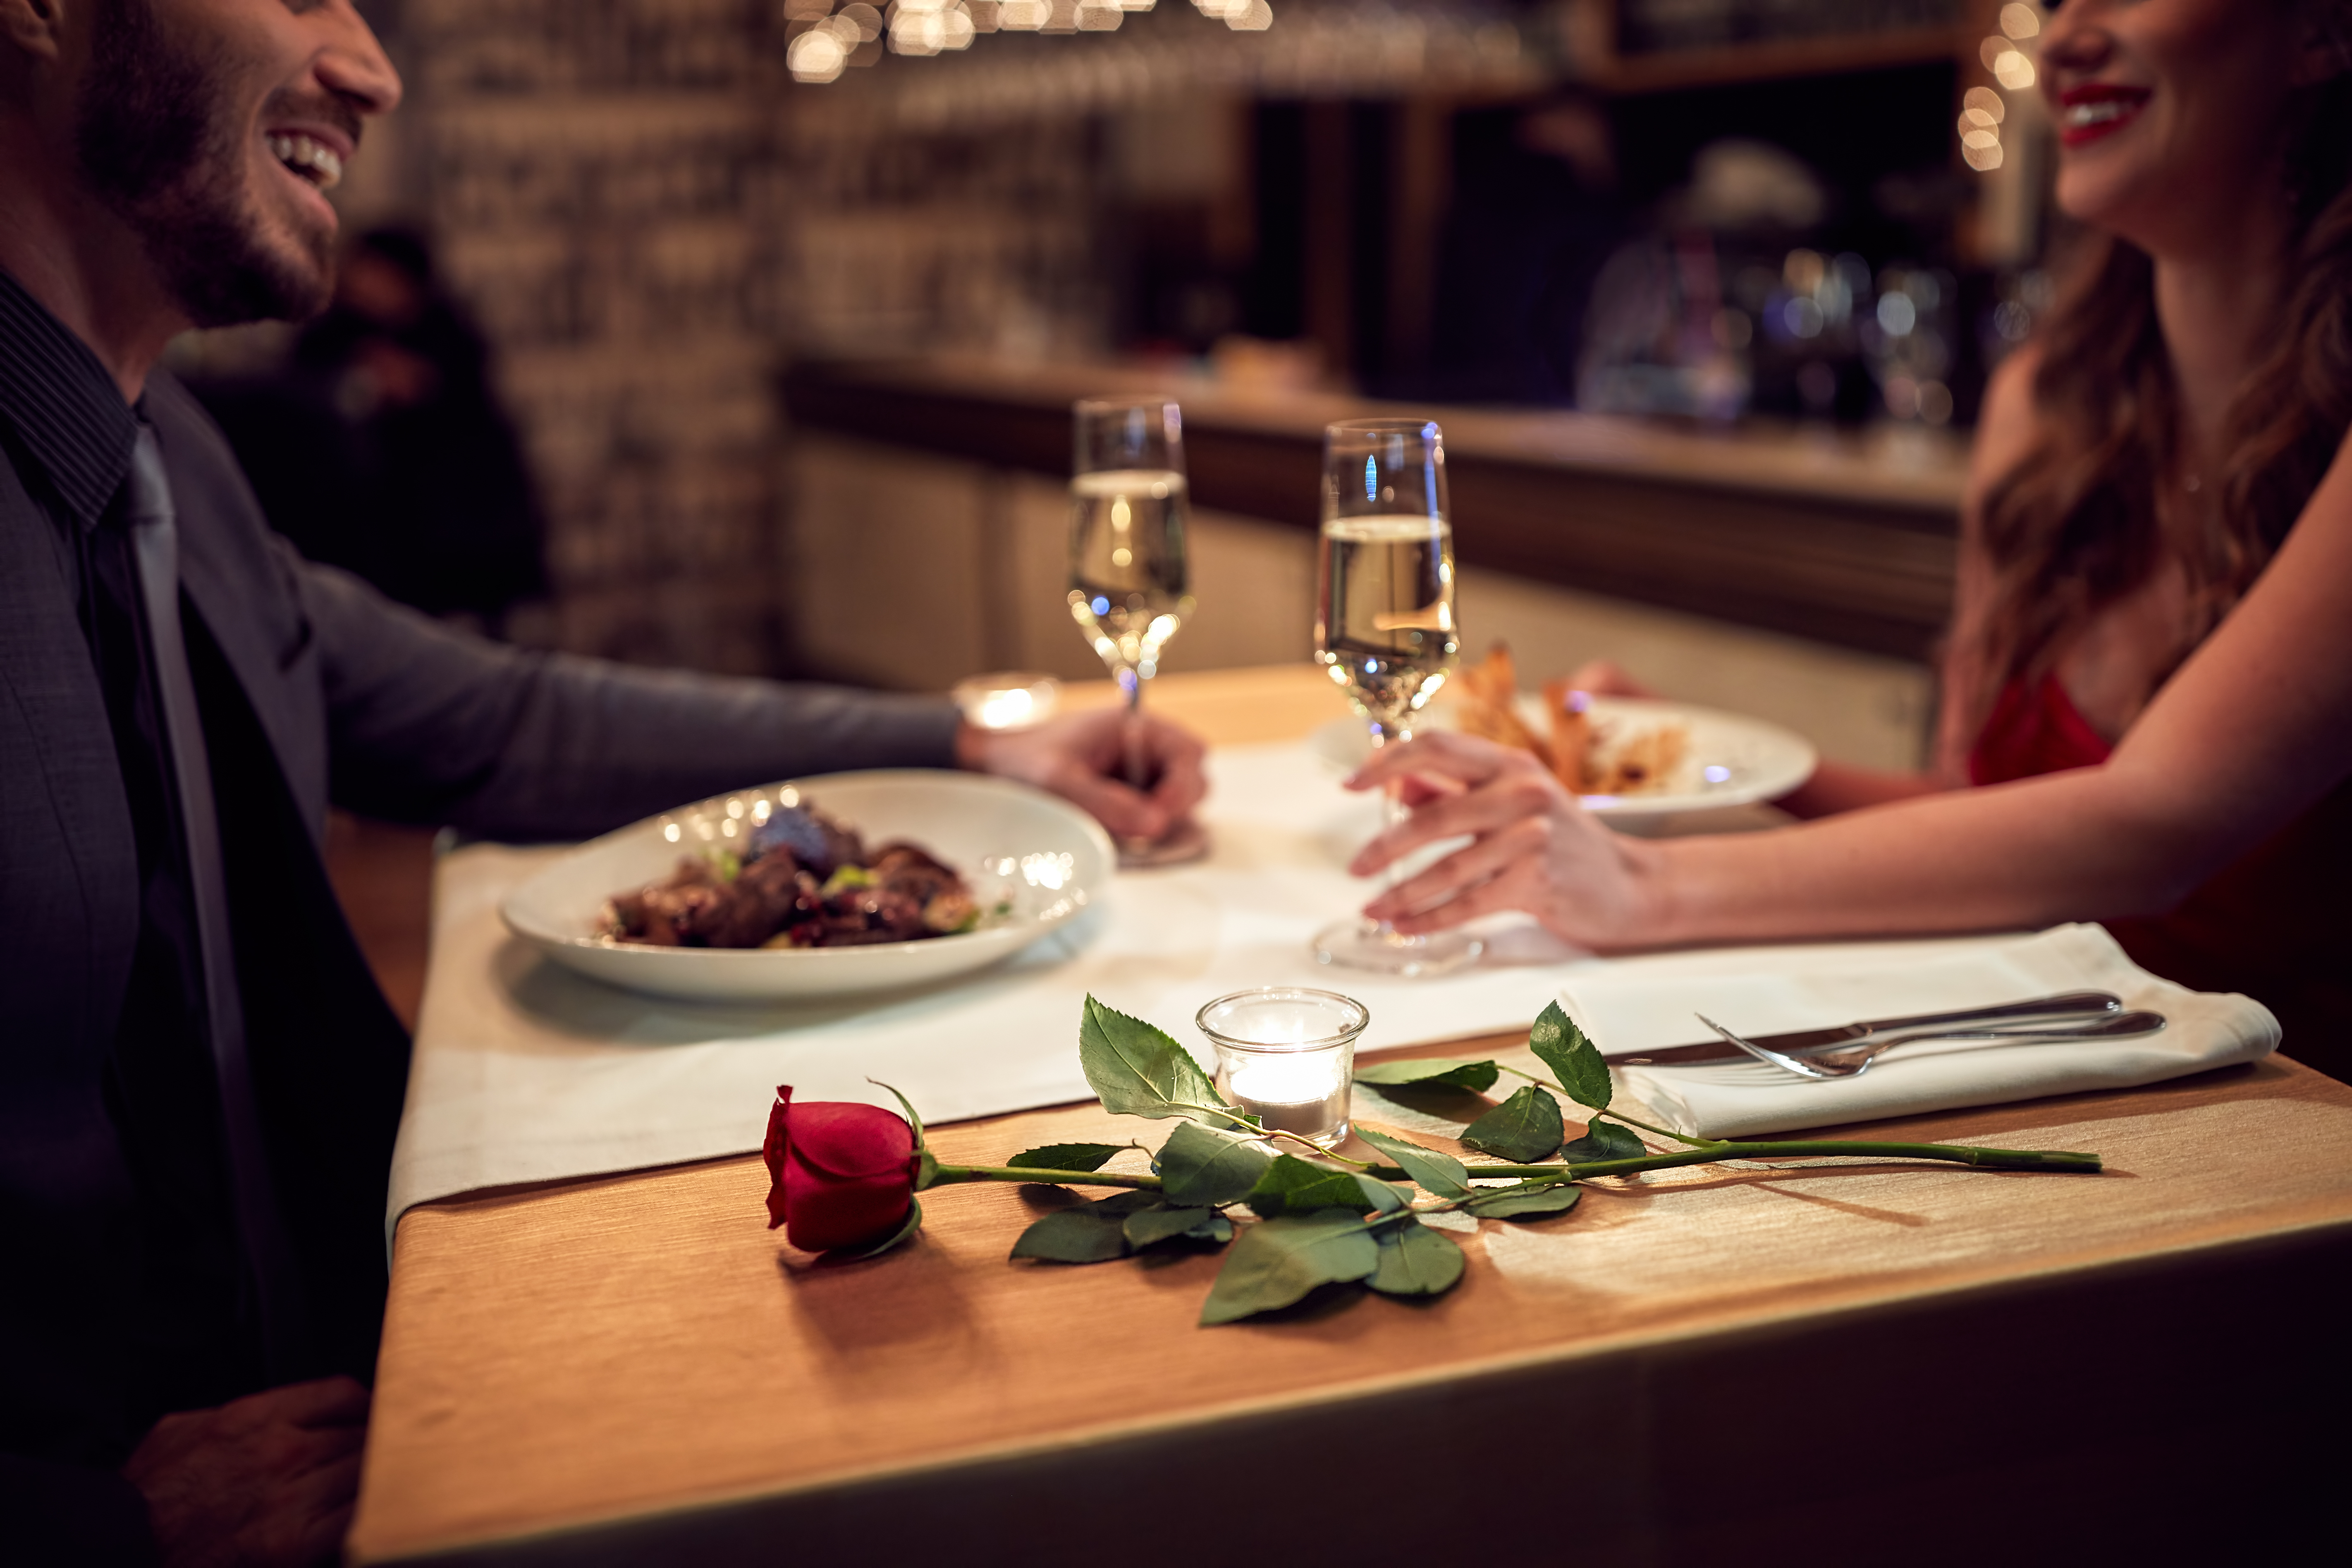 Ein Paar genießt ein romantisches Abendessen | Quelle: Shutterstock